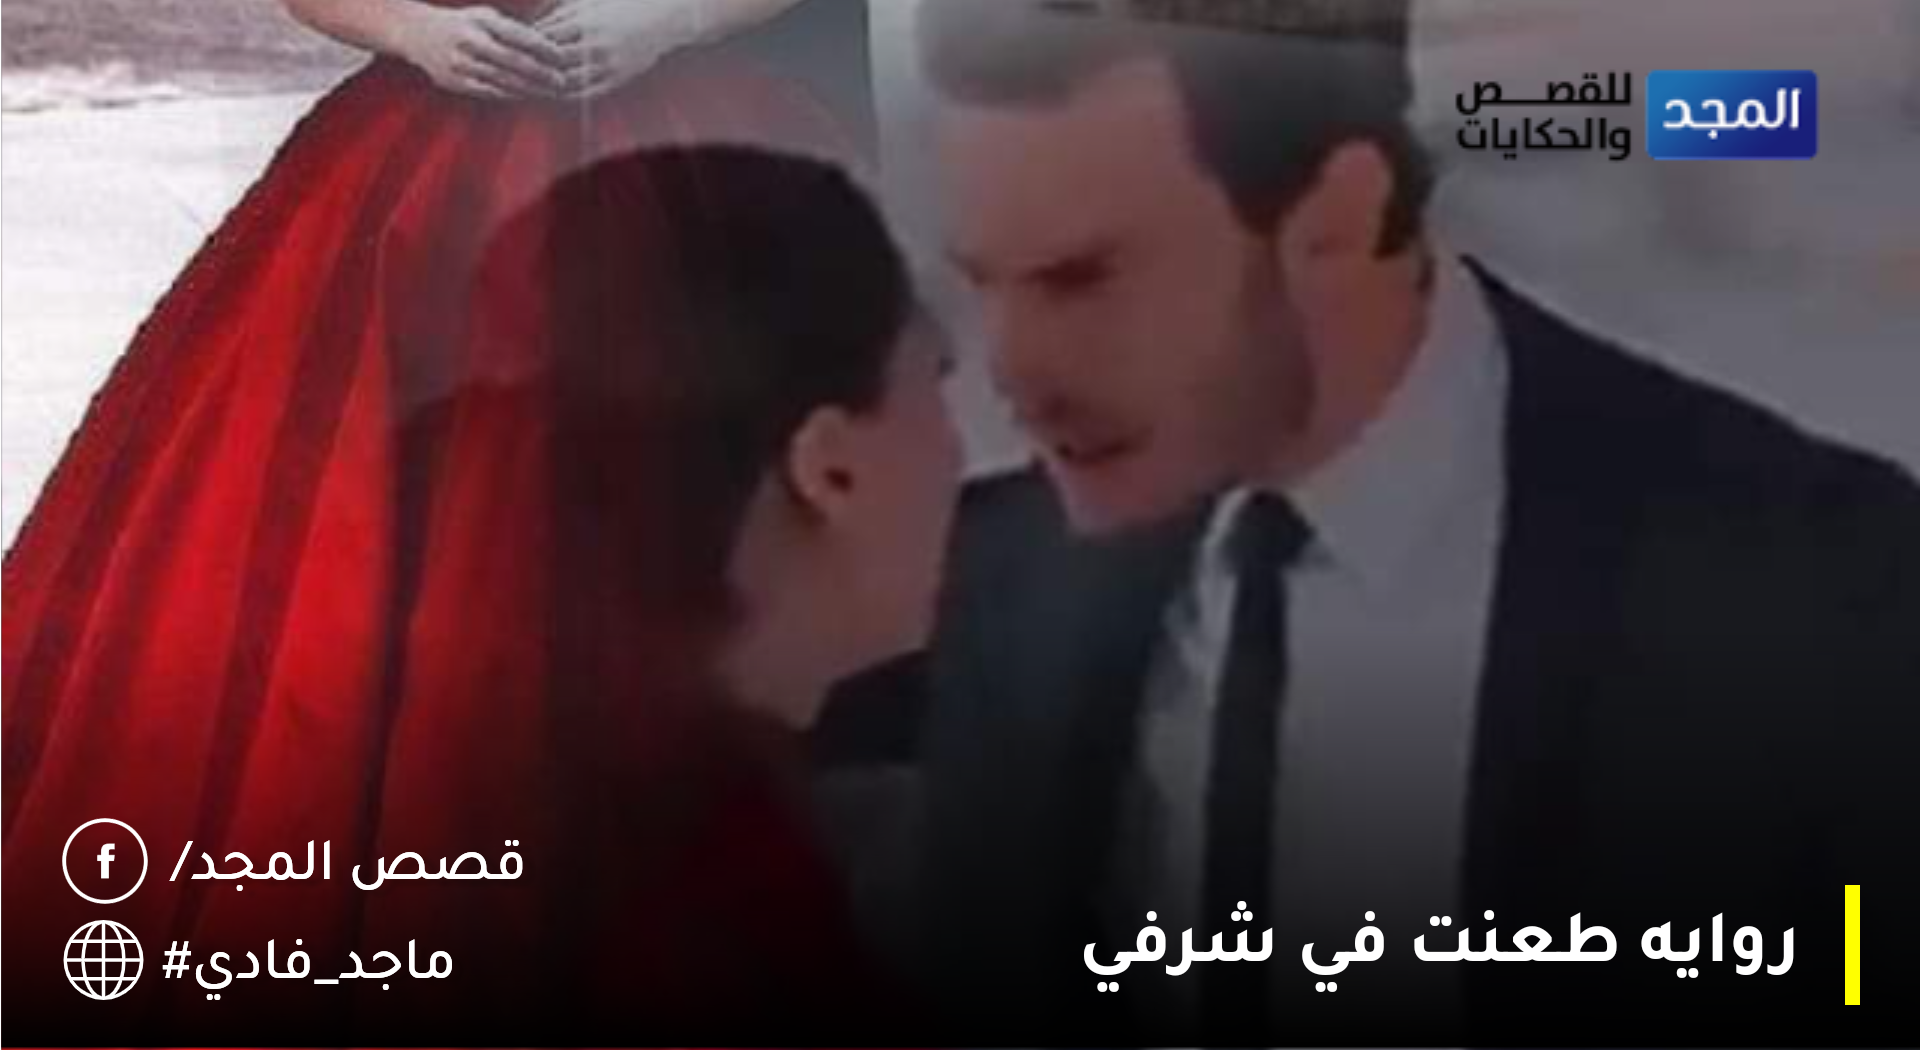 روايه طعنت في شرفي الفصل العاشر بقلم فاطمة احمد ابو جلاب